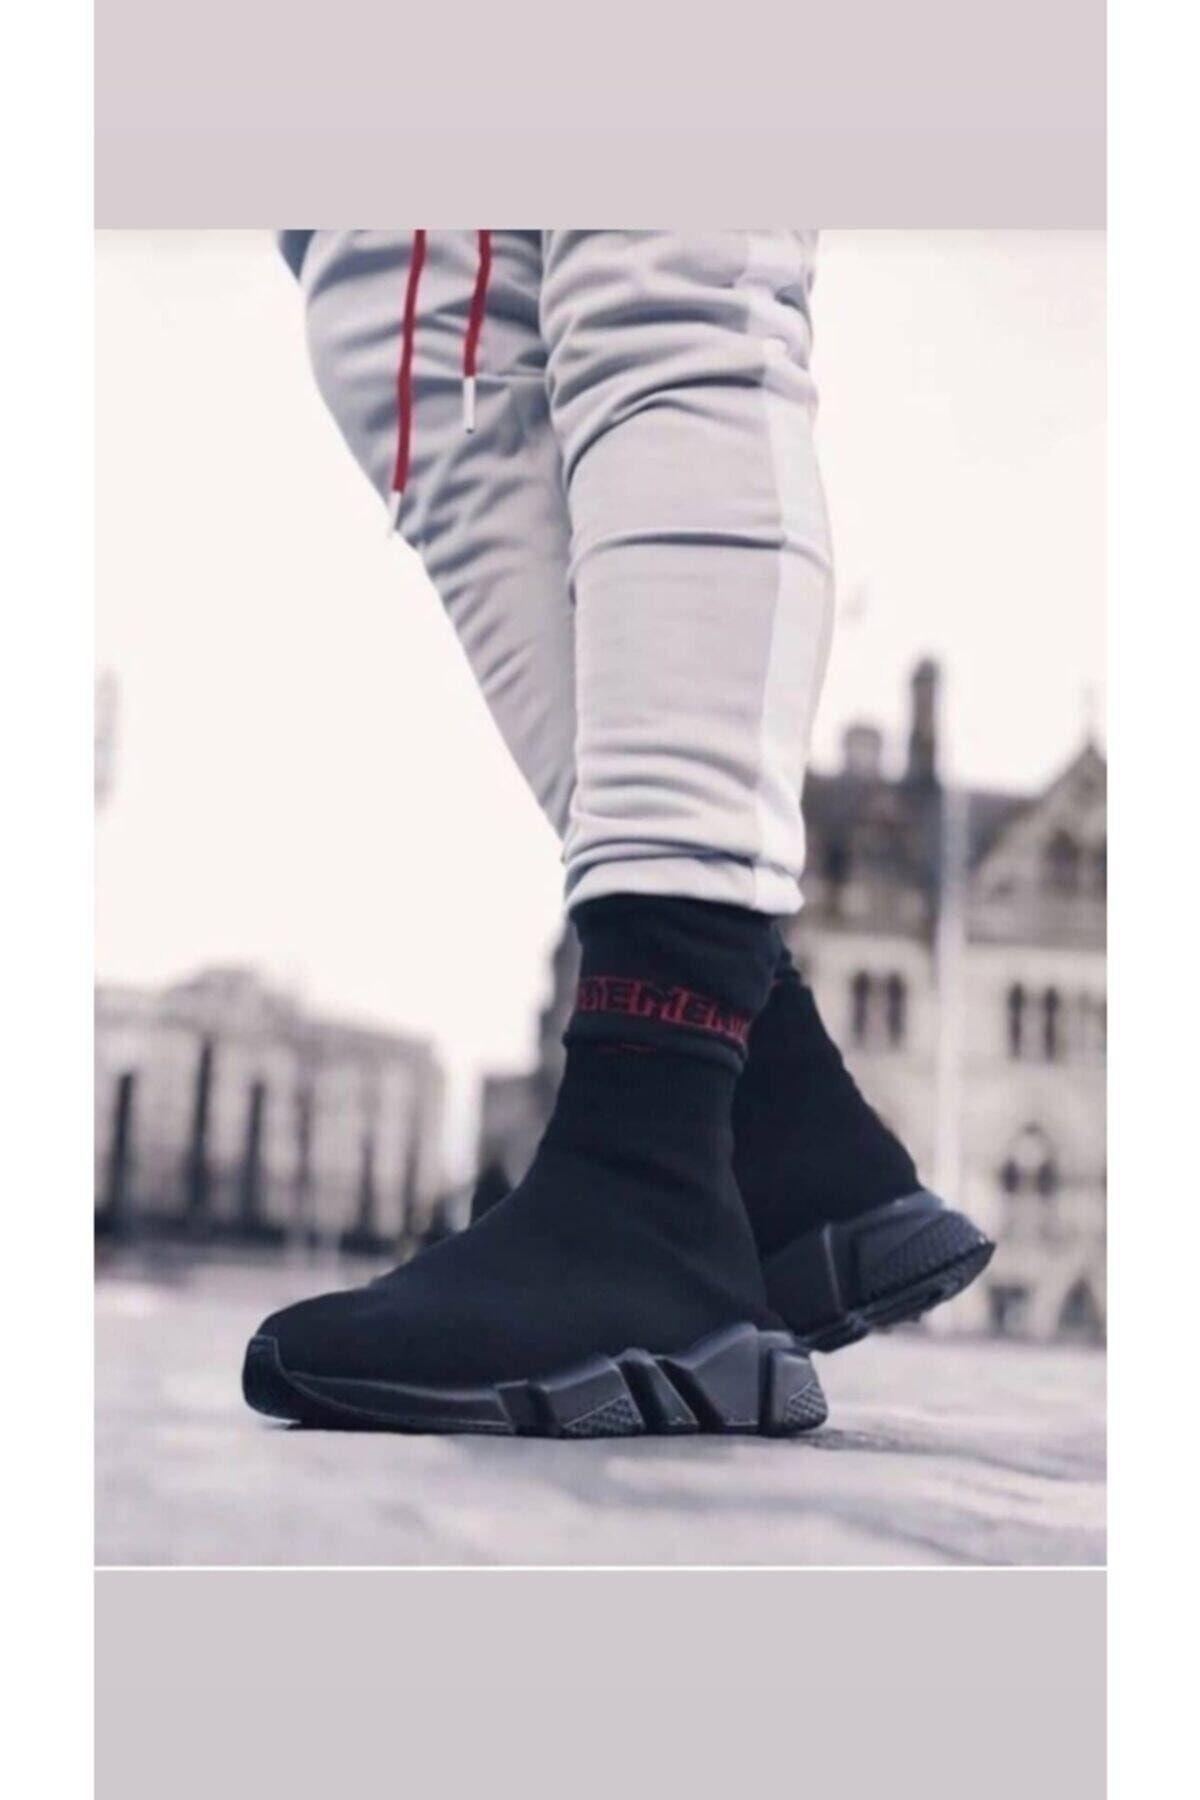 MİRKET Unisex Siyah Çorap Siyah Taban Sneakers Ayakkabı